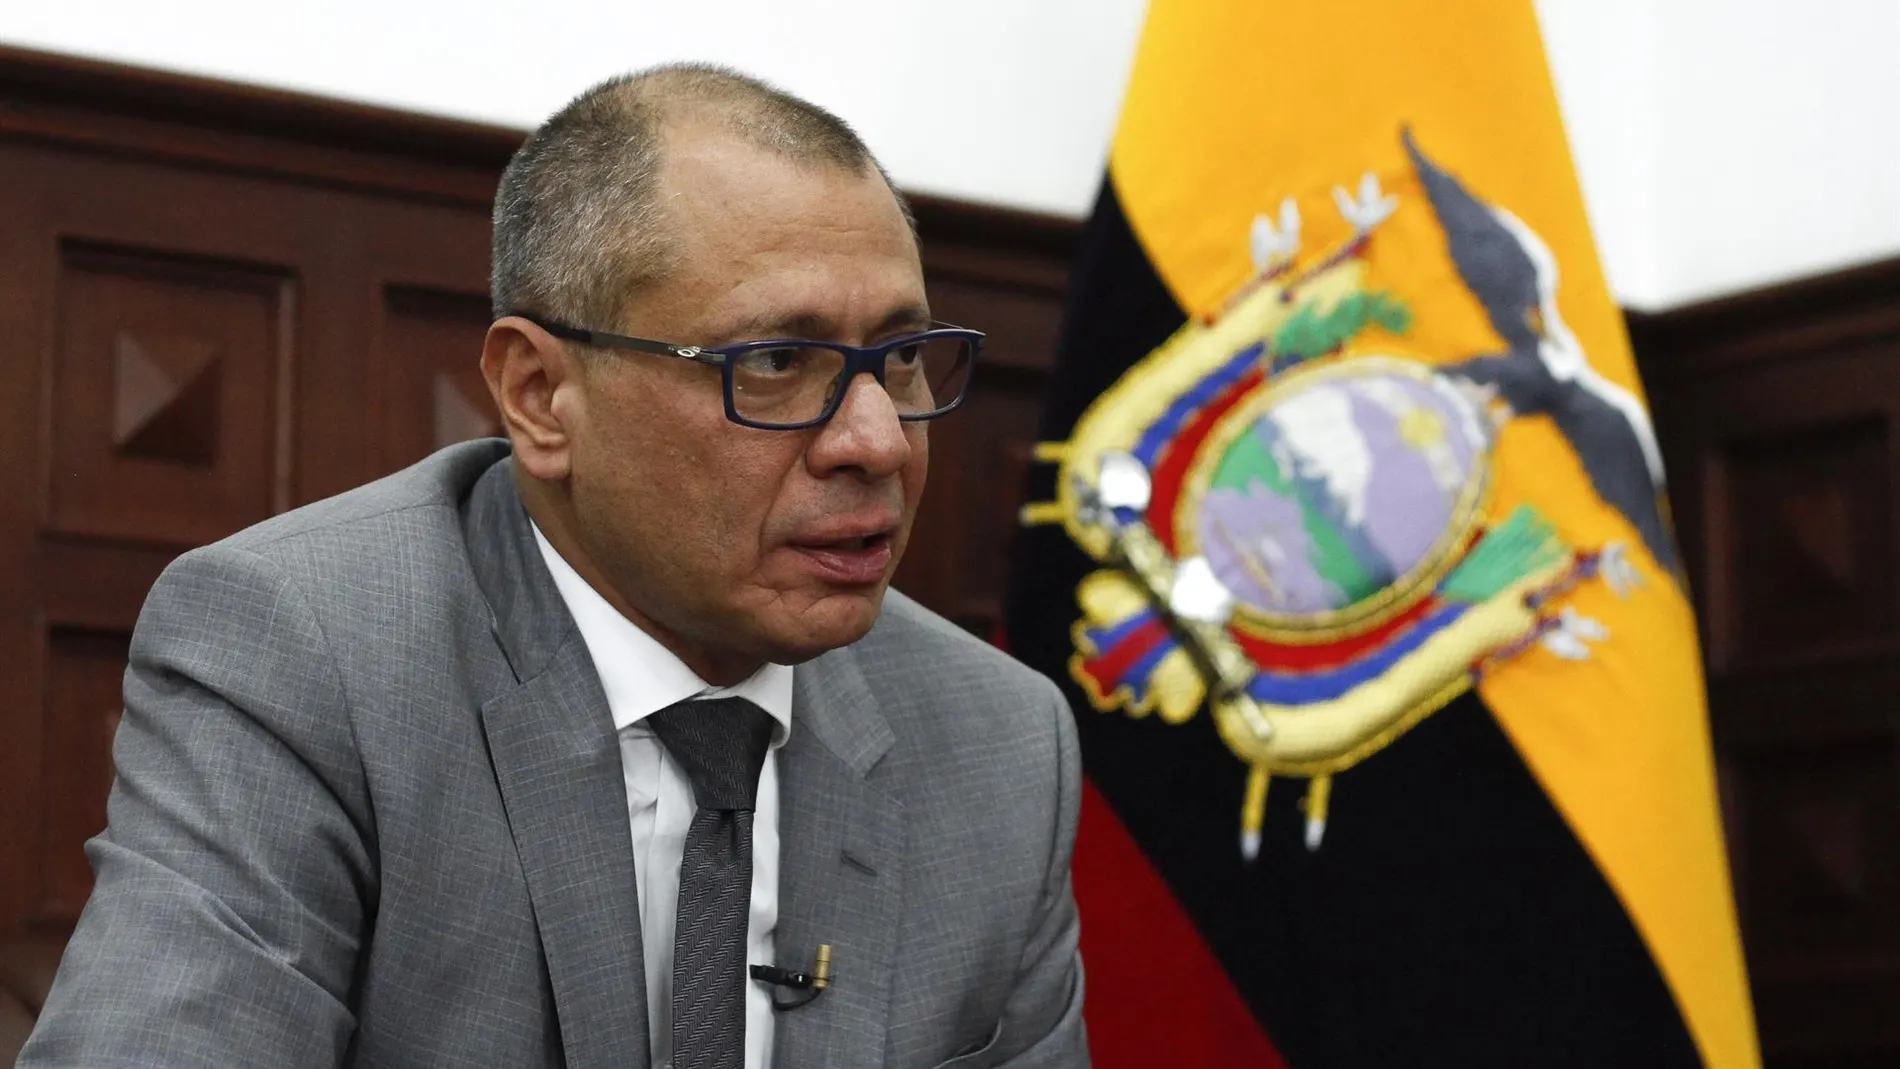 Ecuador.- El exvicepresidente ecuatoriano Jorge Glas denuncia "torturas" durante su detención en la Embajada mexicana